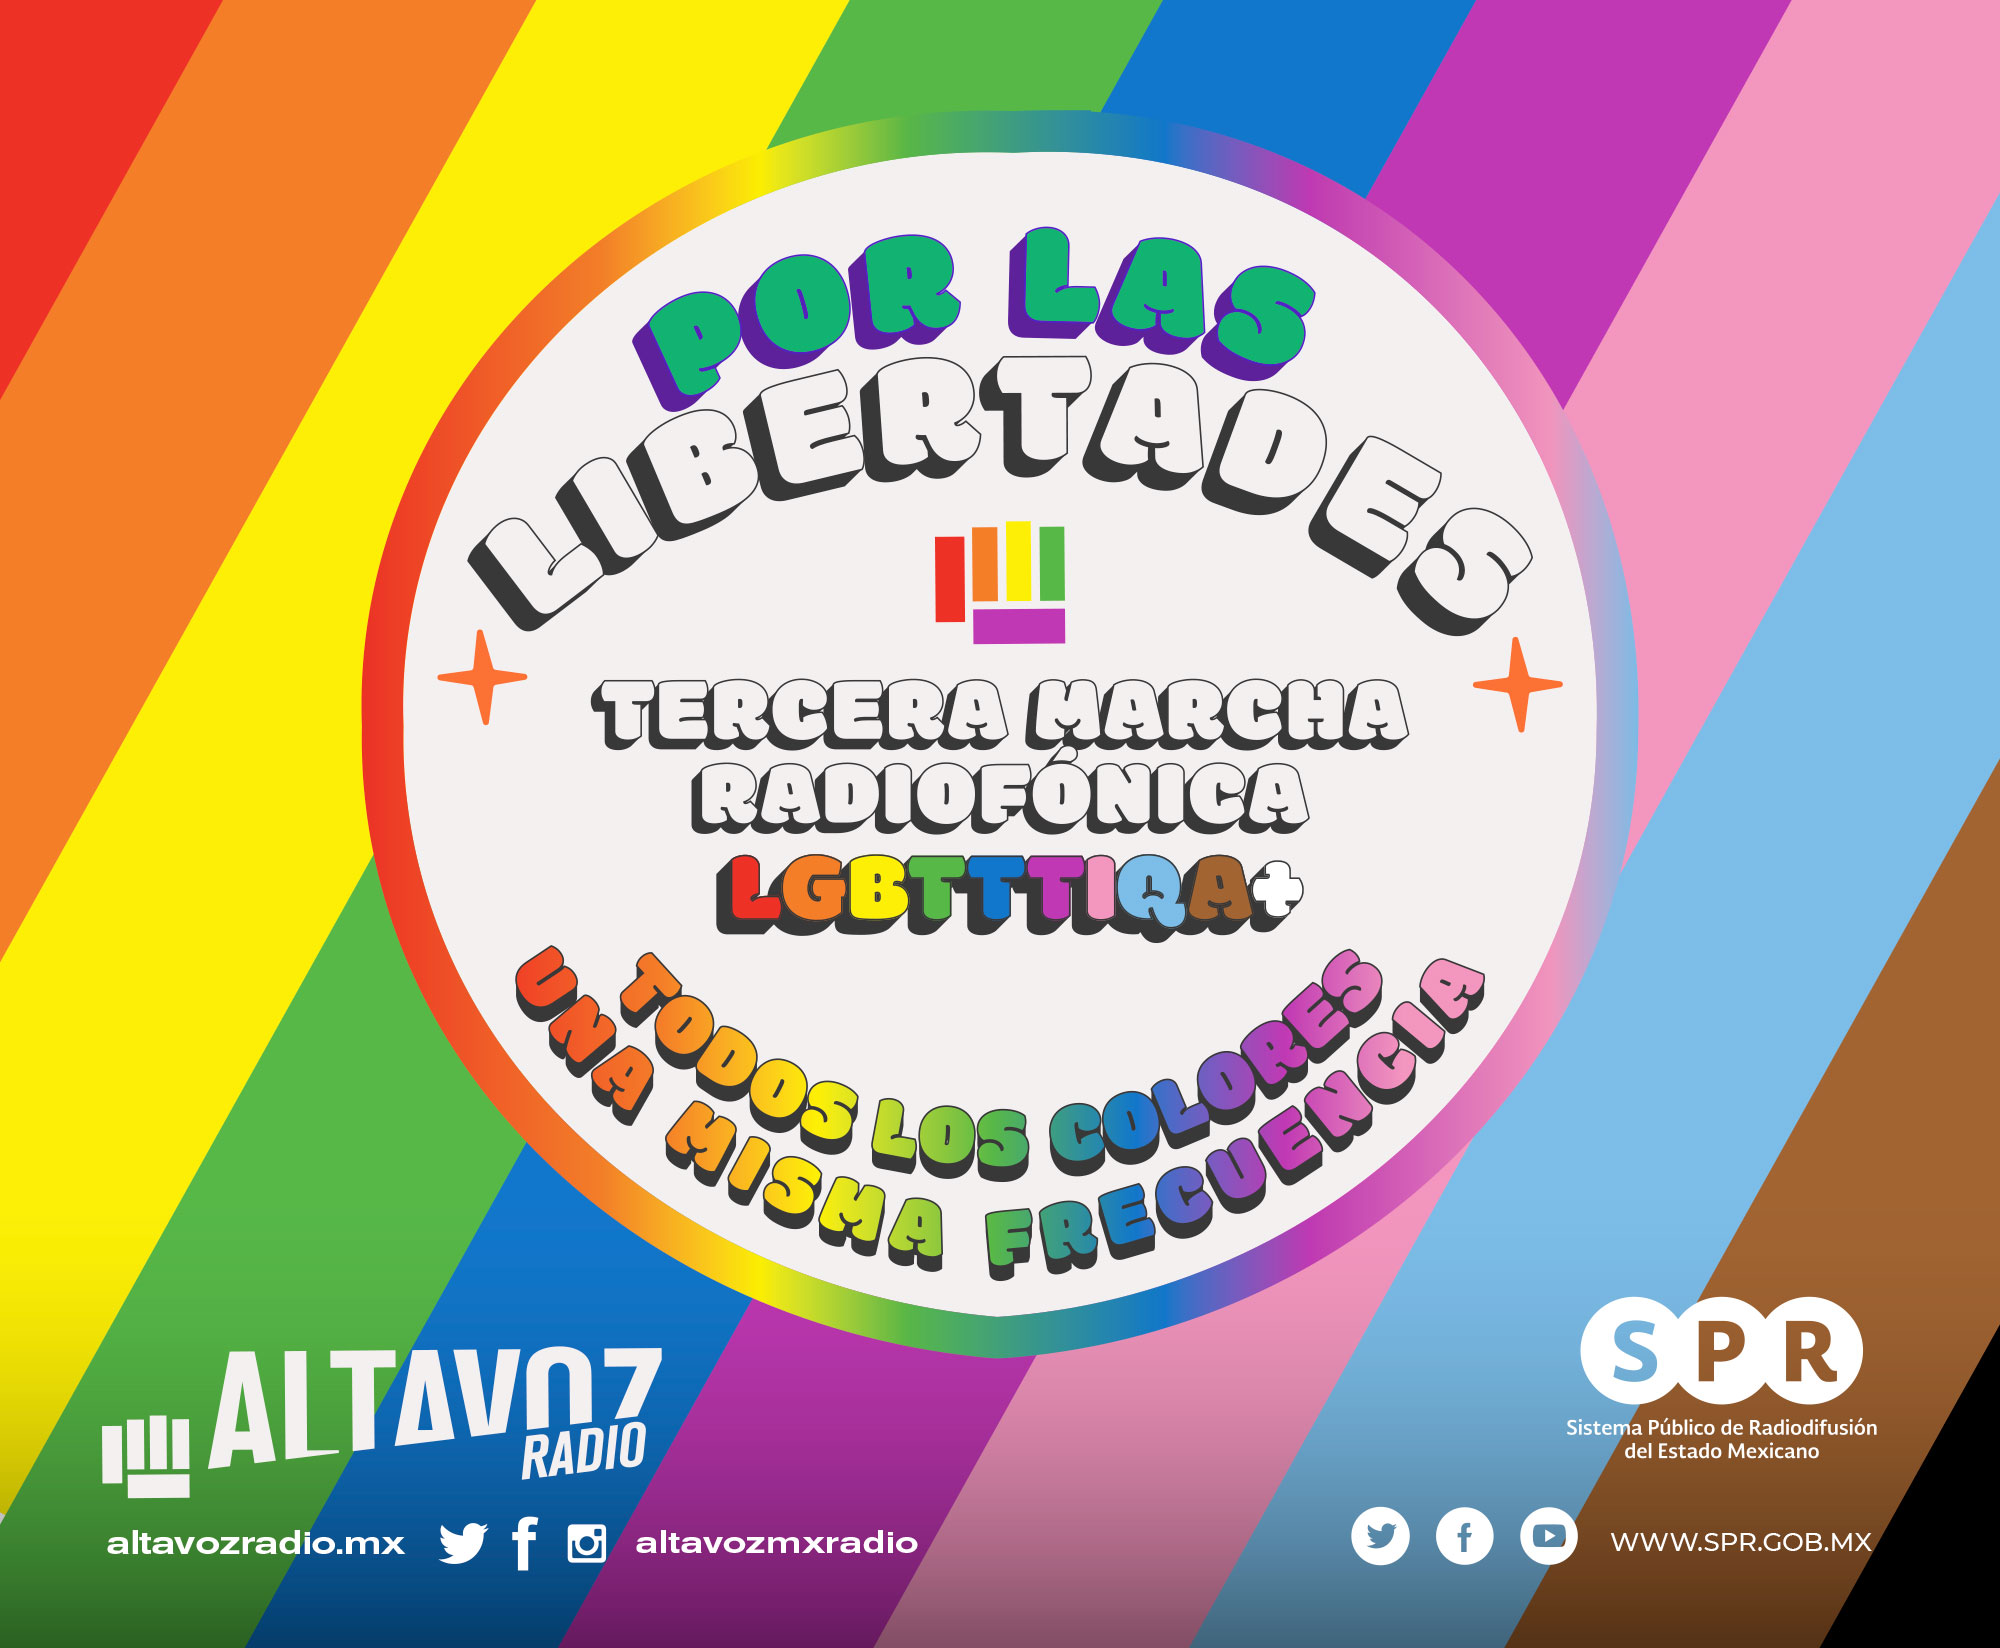 El 23 de junio el orgullo toma el Altavoz en la “Tercera Marcha Radiofónica LGBTTTIQA+: Por las libertades, todos los colores, una misma frecuencia”